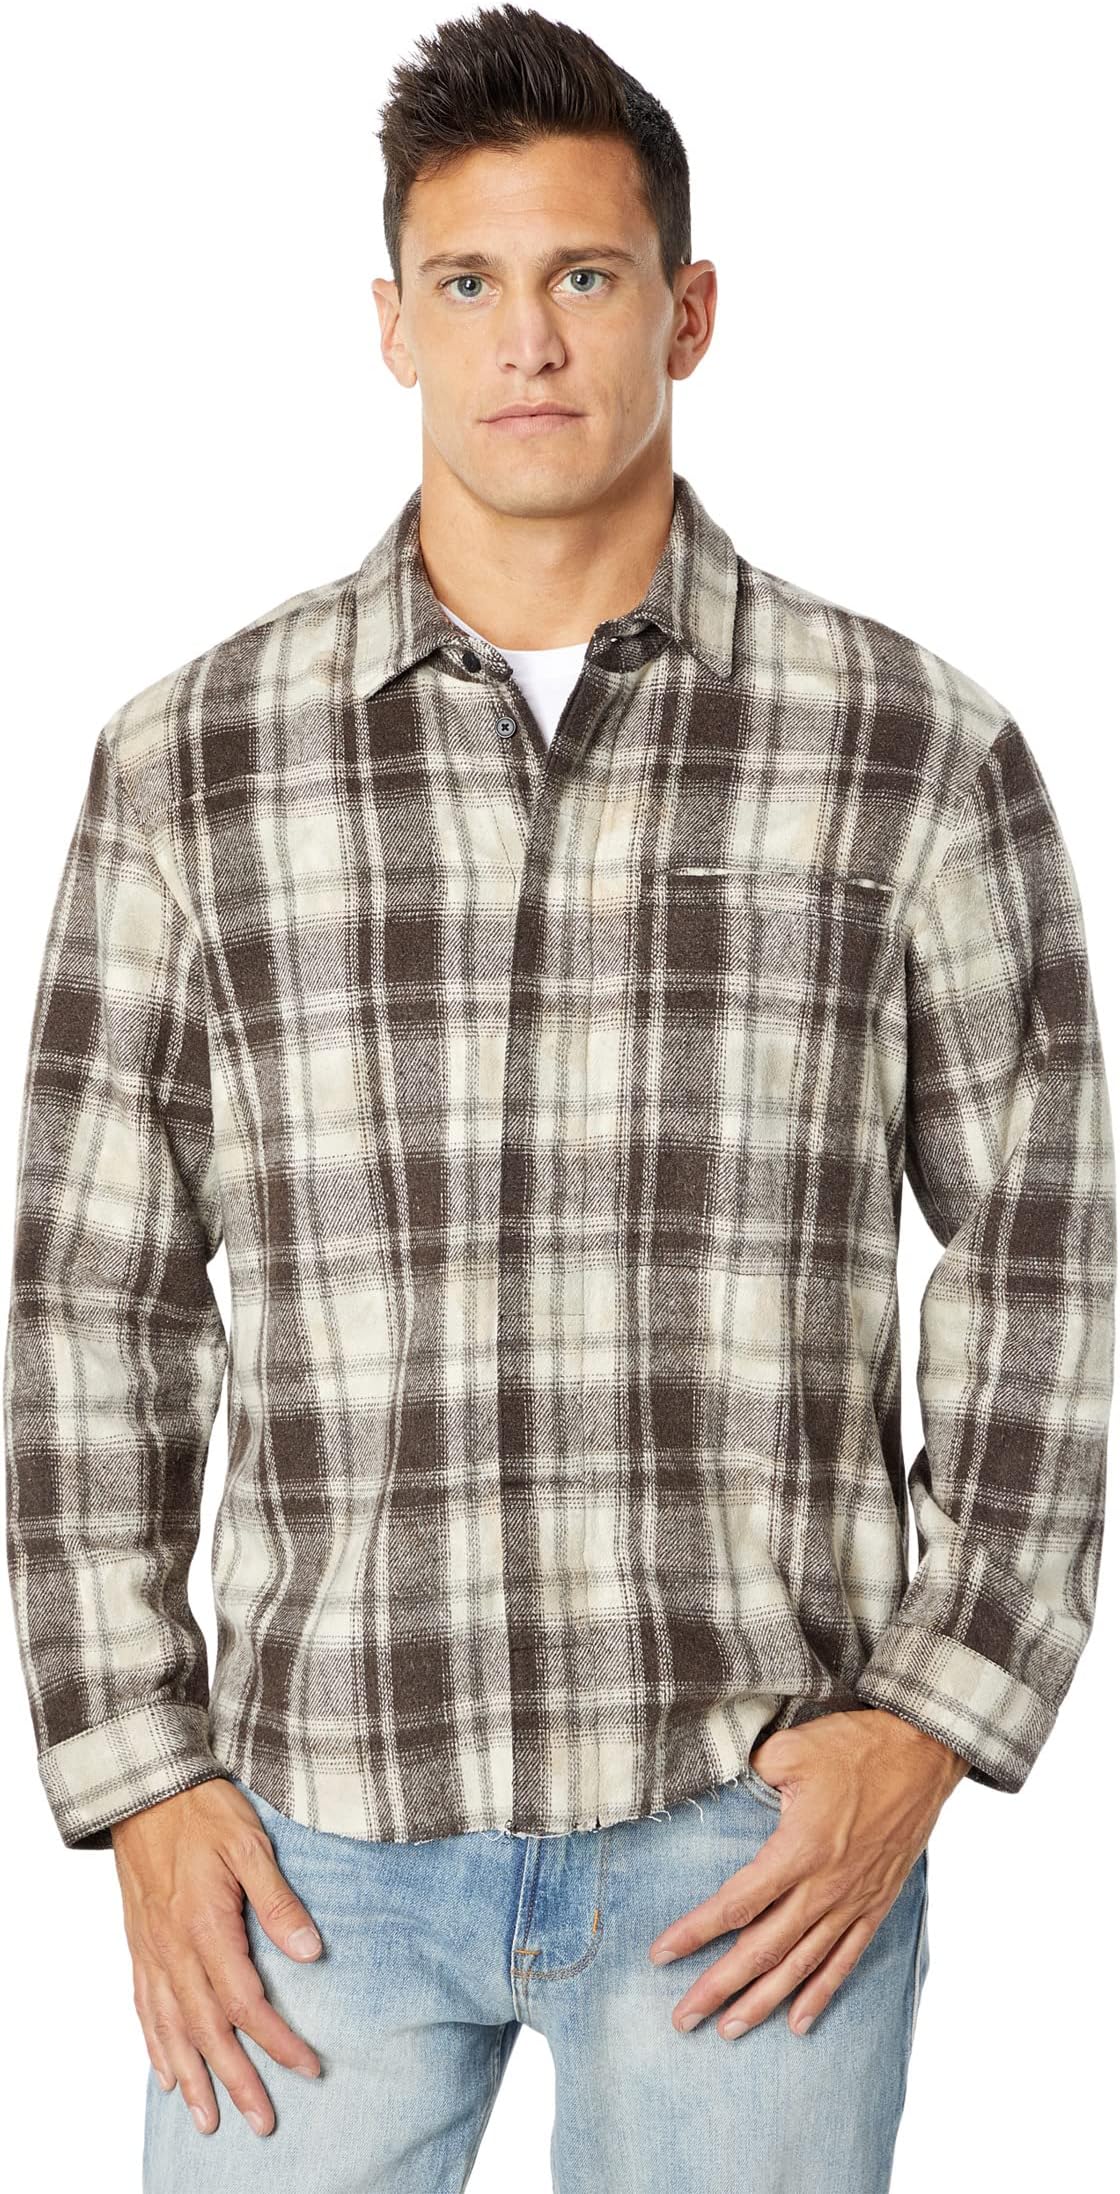 поясная беседка ринг canyon light Рубашка с длинным рукавом и V-образным швом на спине Hudson Jeans, цвет Light Canyon